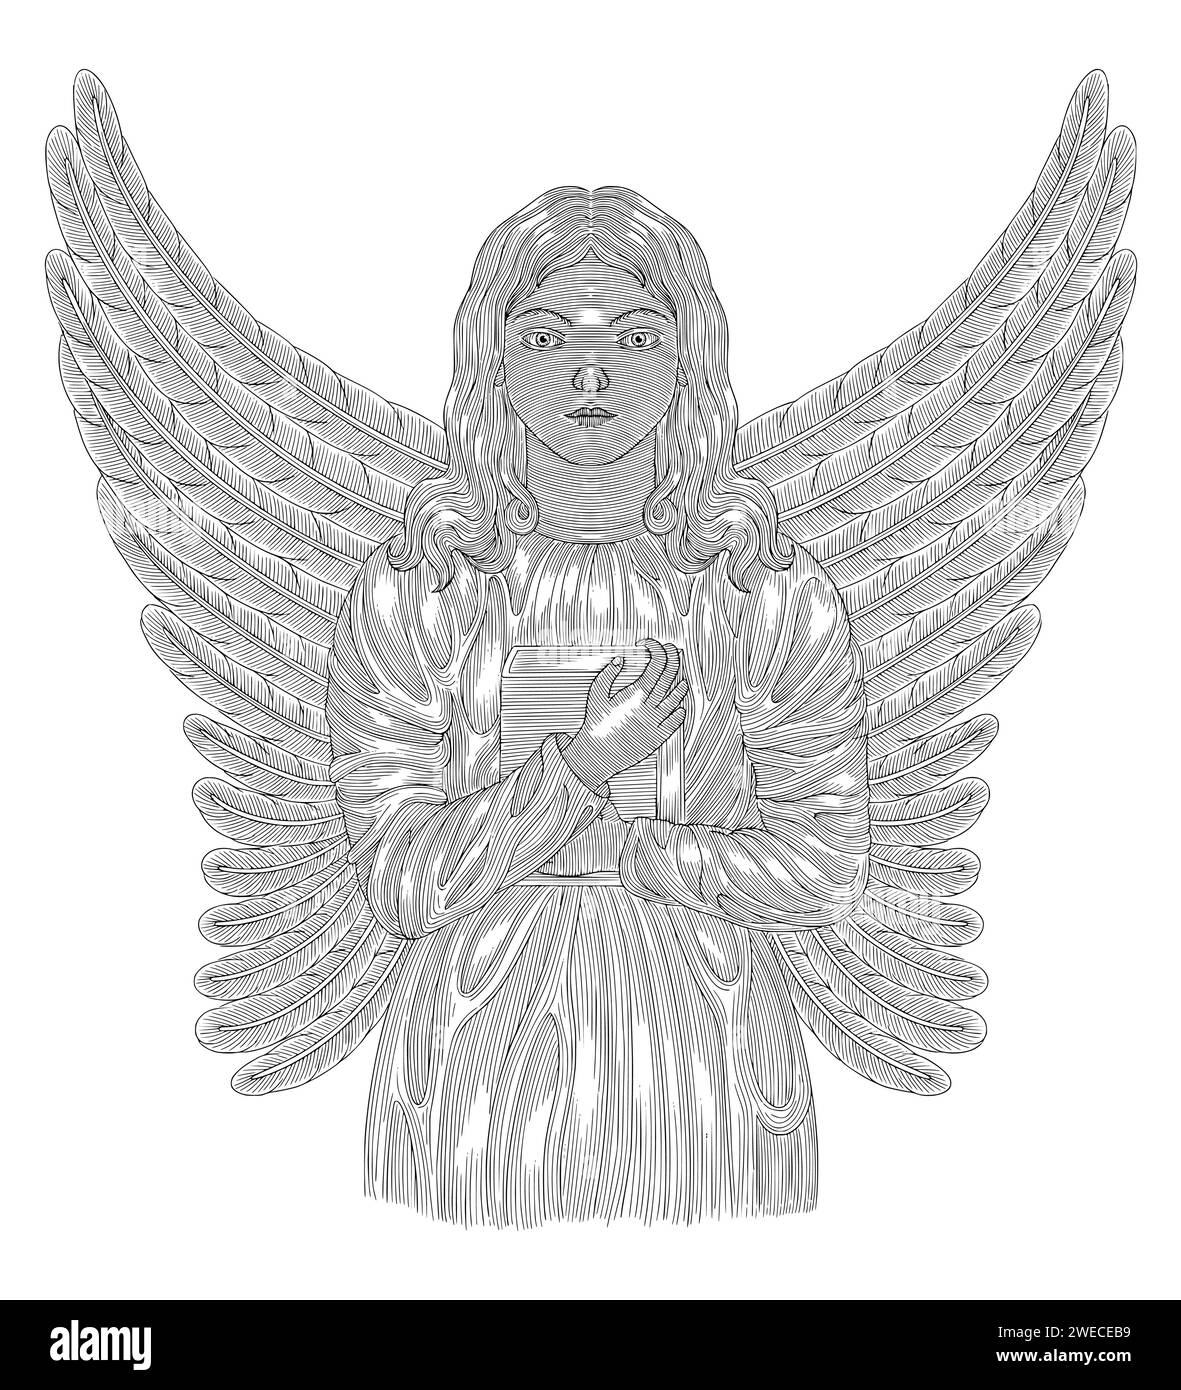 ange avec des ailes tenant un livre, illustration de style dessin gravure vintage Illustration de Vecteur